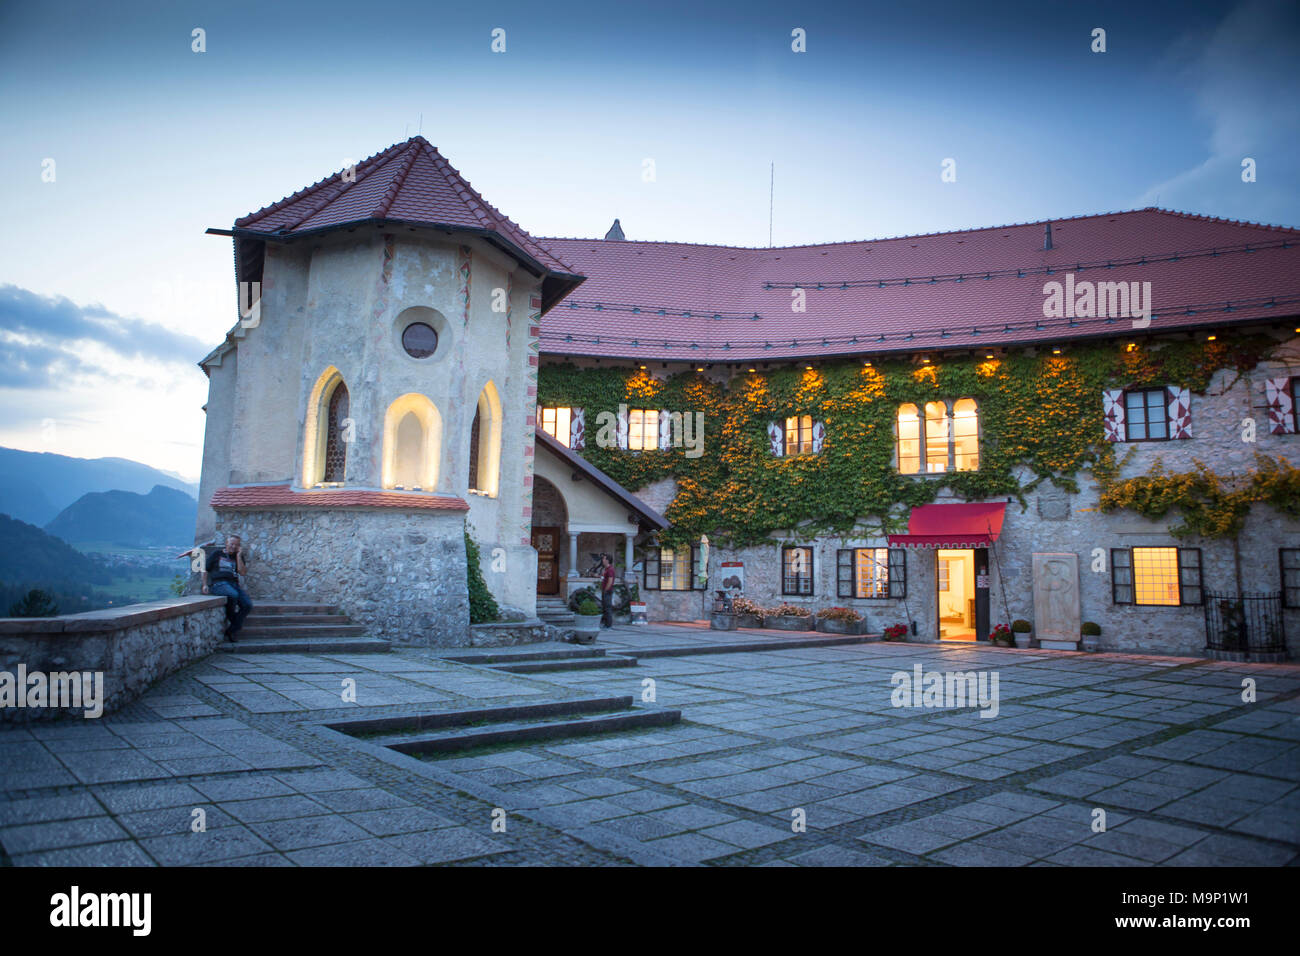 Restaurant building of Bled castle, above famous lake Bled, Triglav, Slovenia Stock Photo